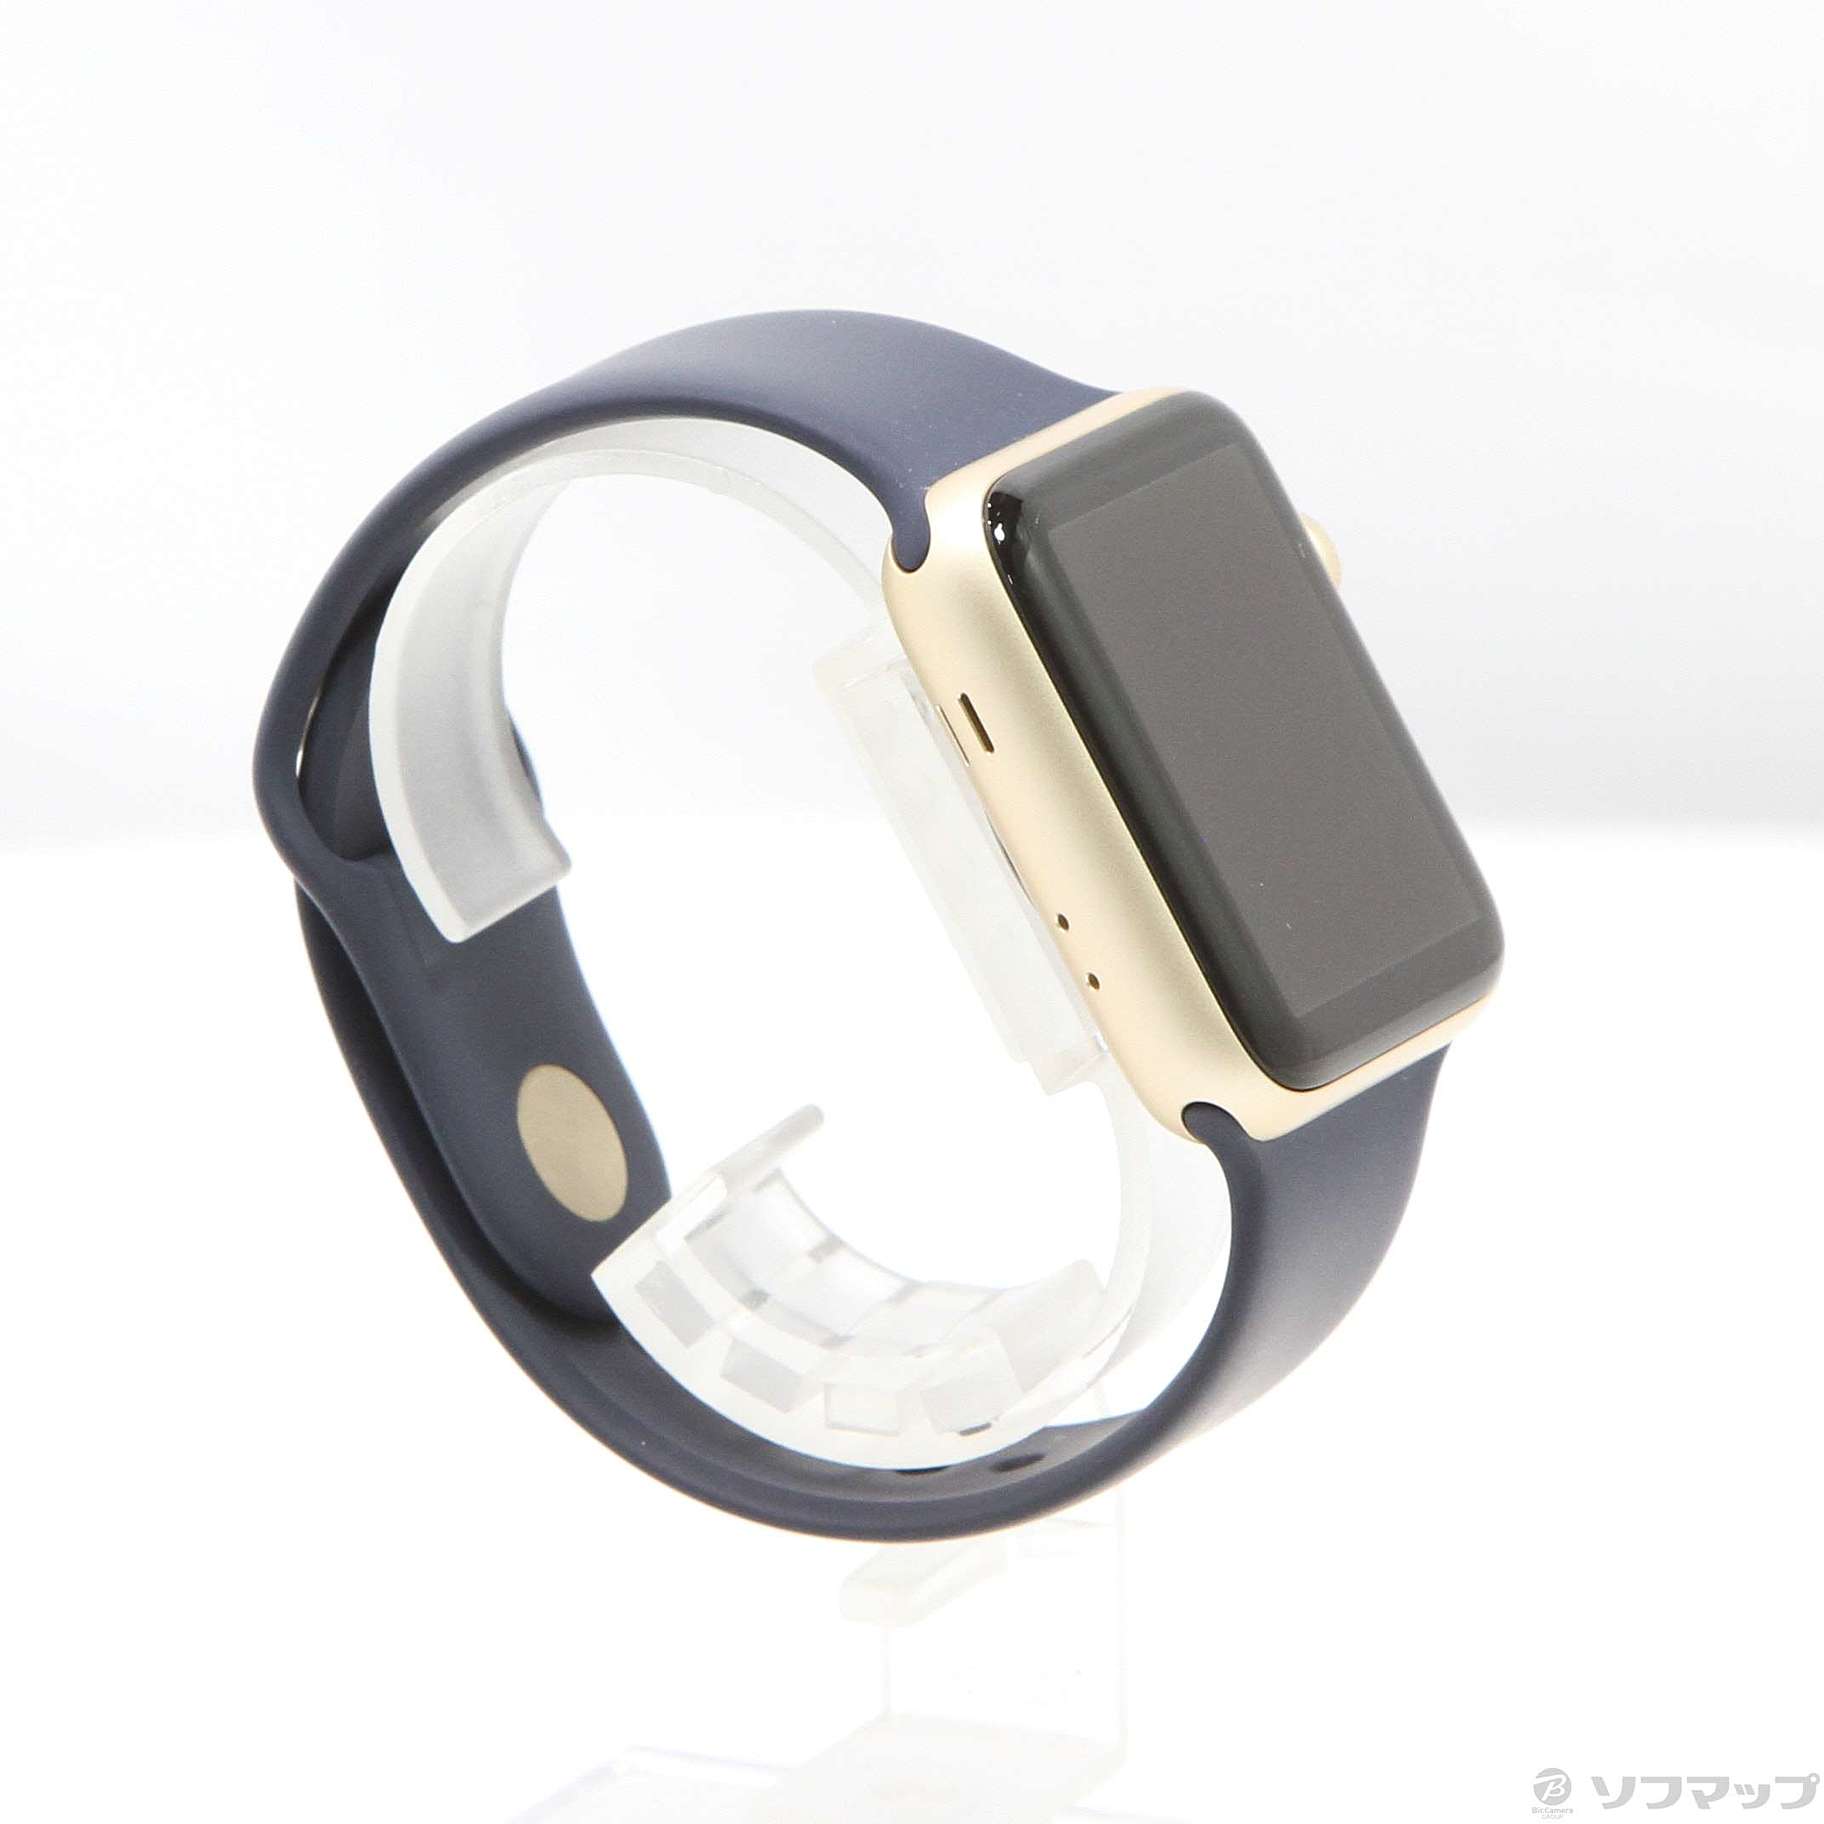 中古】Apple Watch Series 2 42mm ゴールドアルミニウムケース